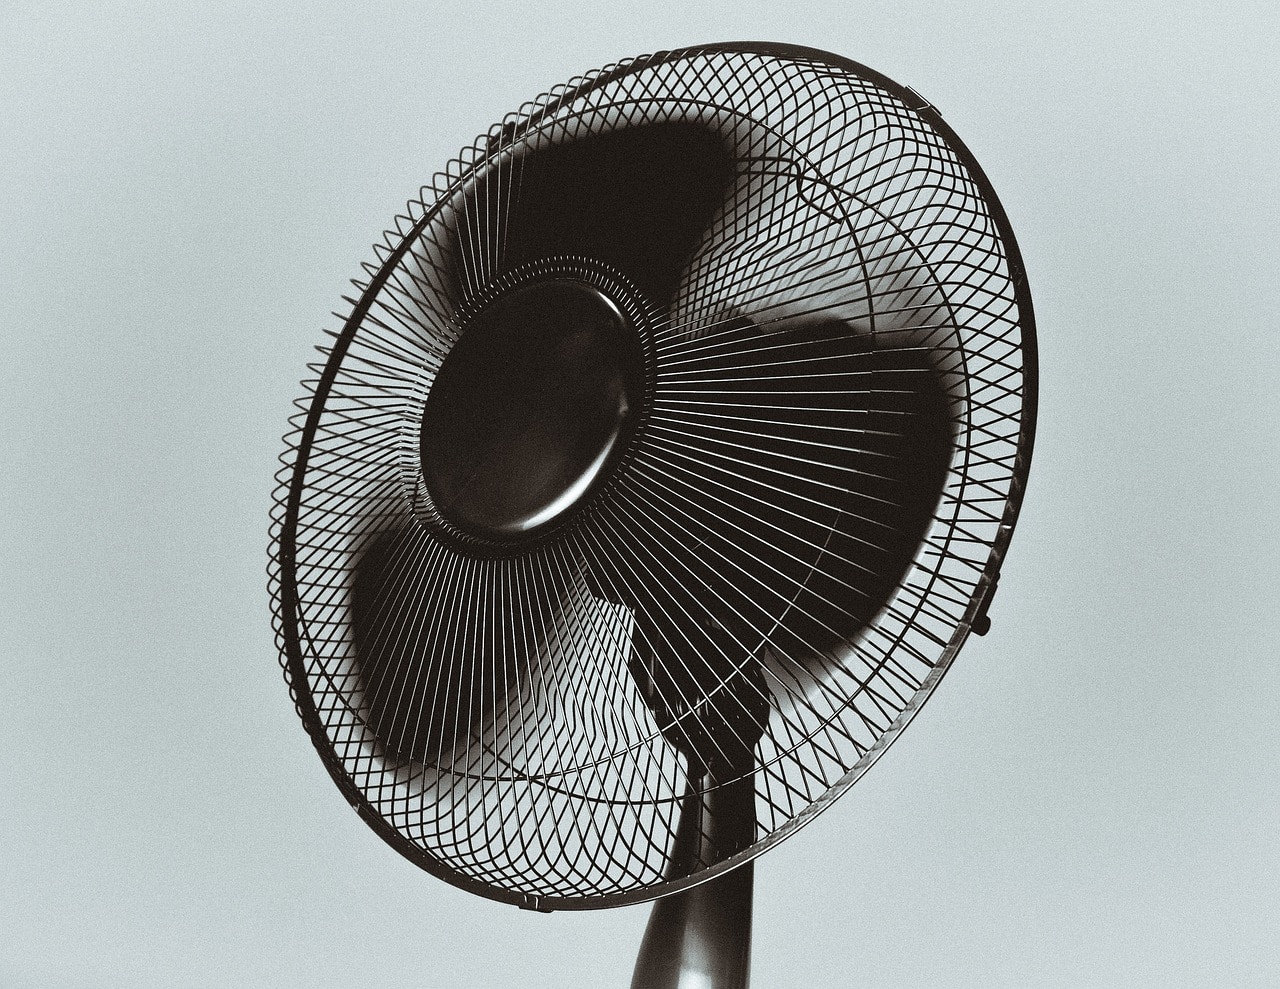 Ventilador preto funcionando. Imagem do conteúdo sobre como limpar ventilador.